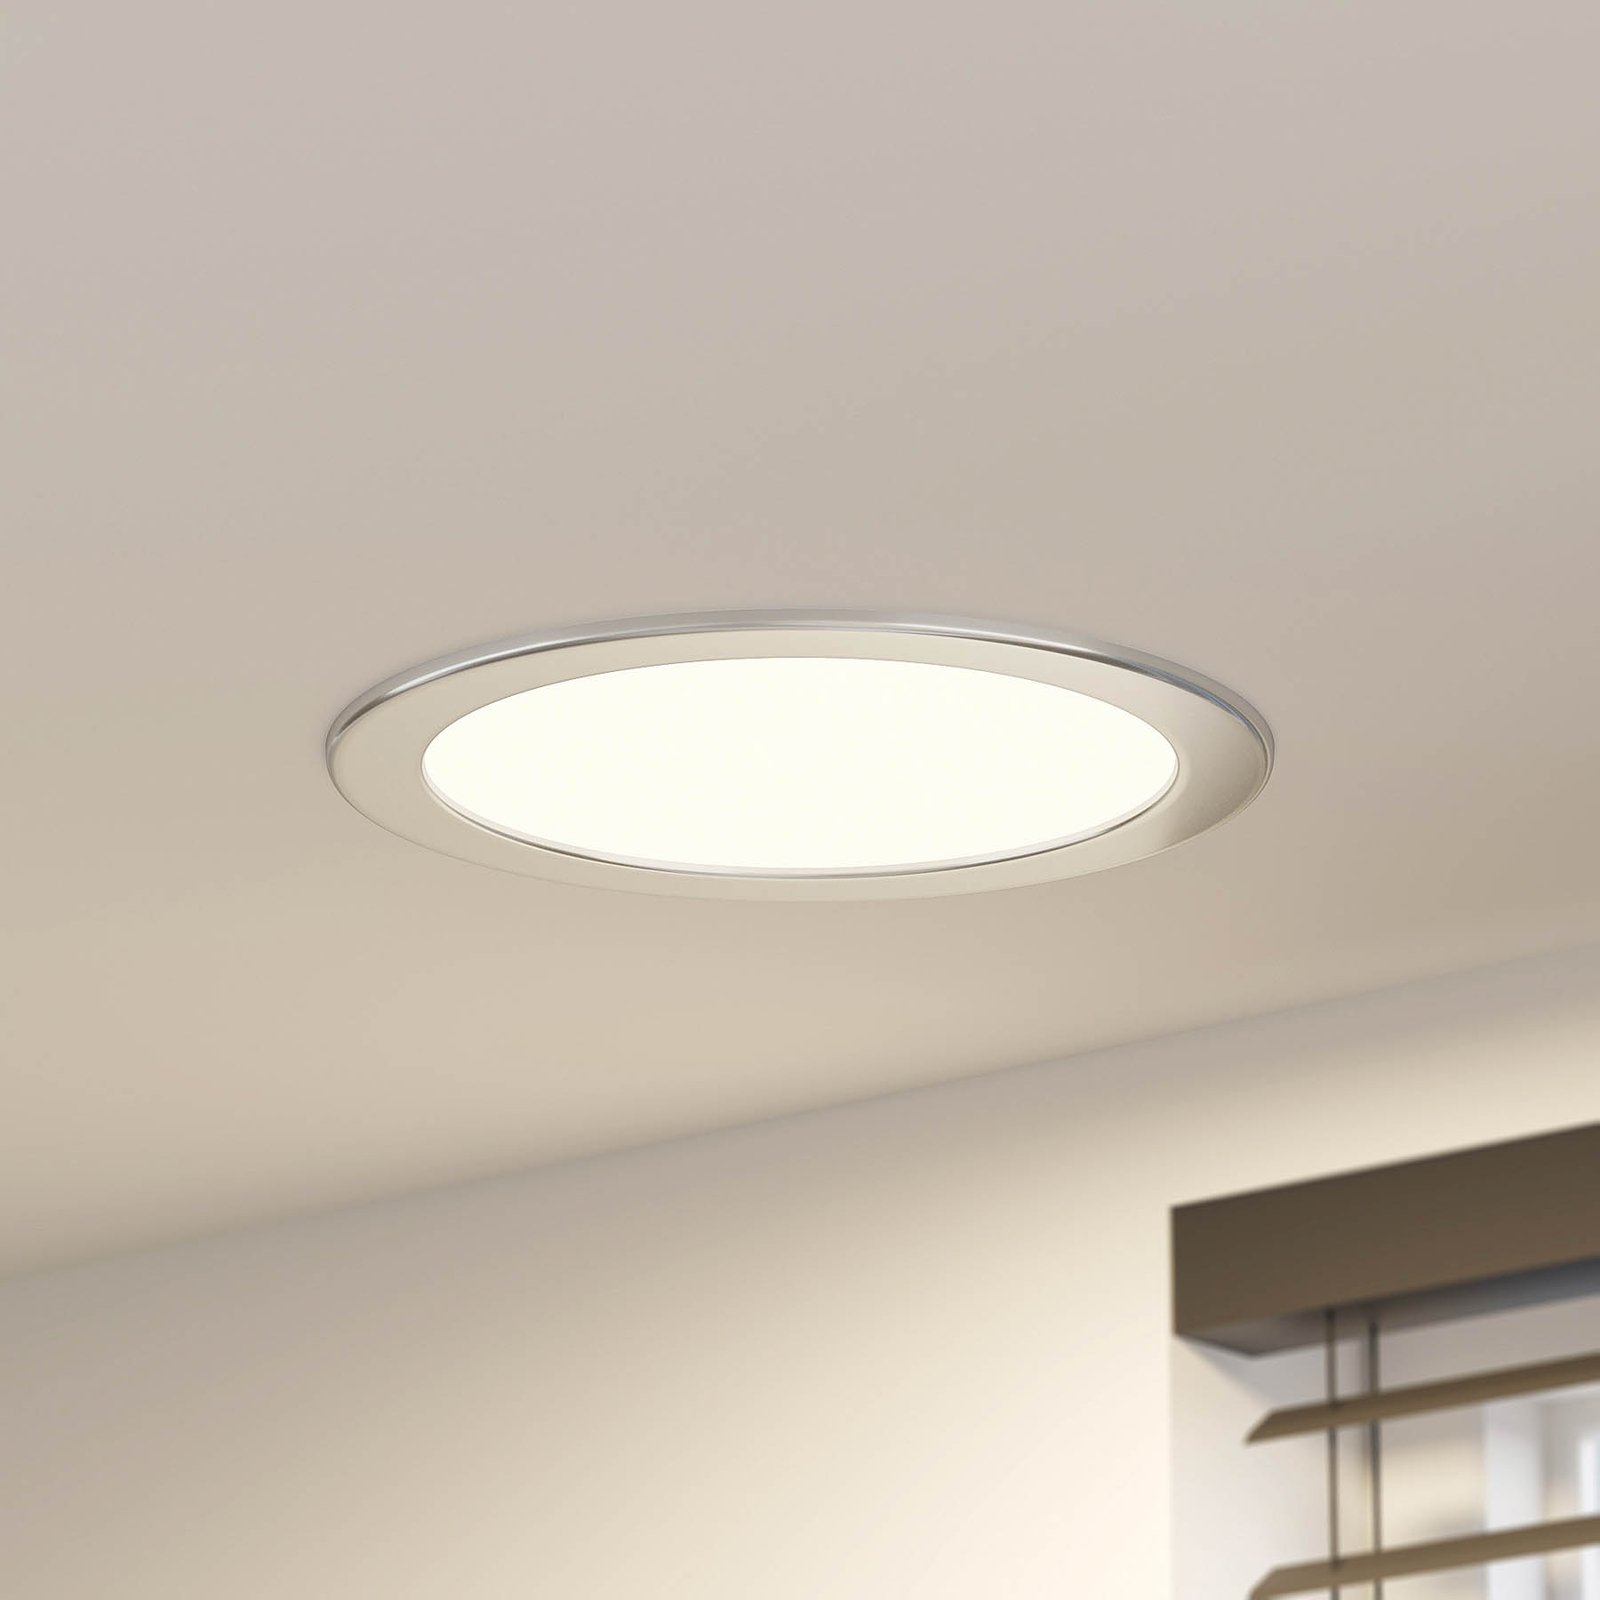 Prios Cadance LED-inbyggnadslampa, silver, 24 cm